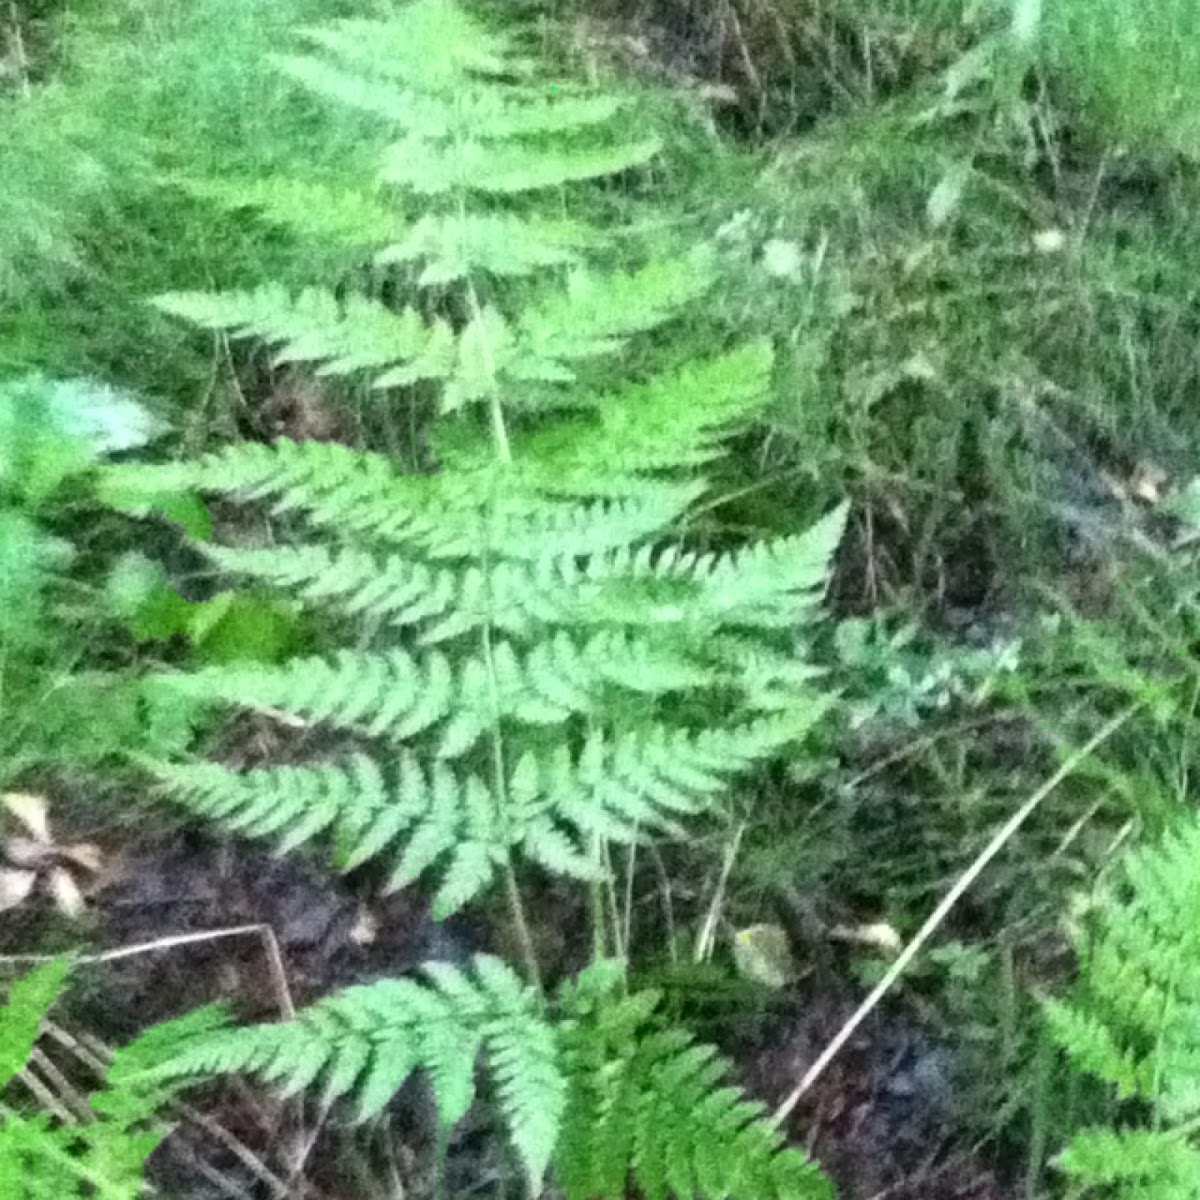 Western oak fern